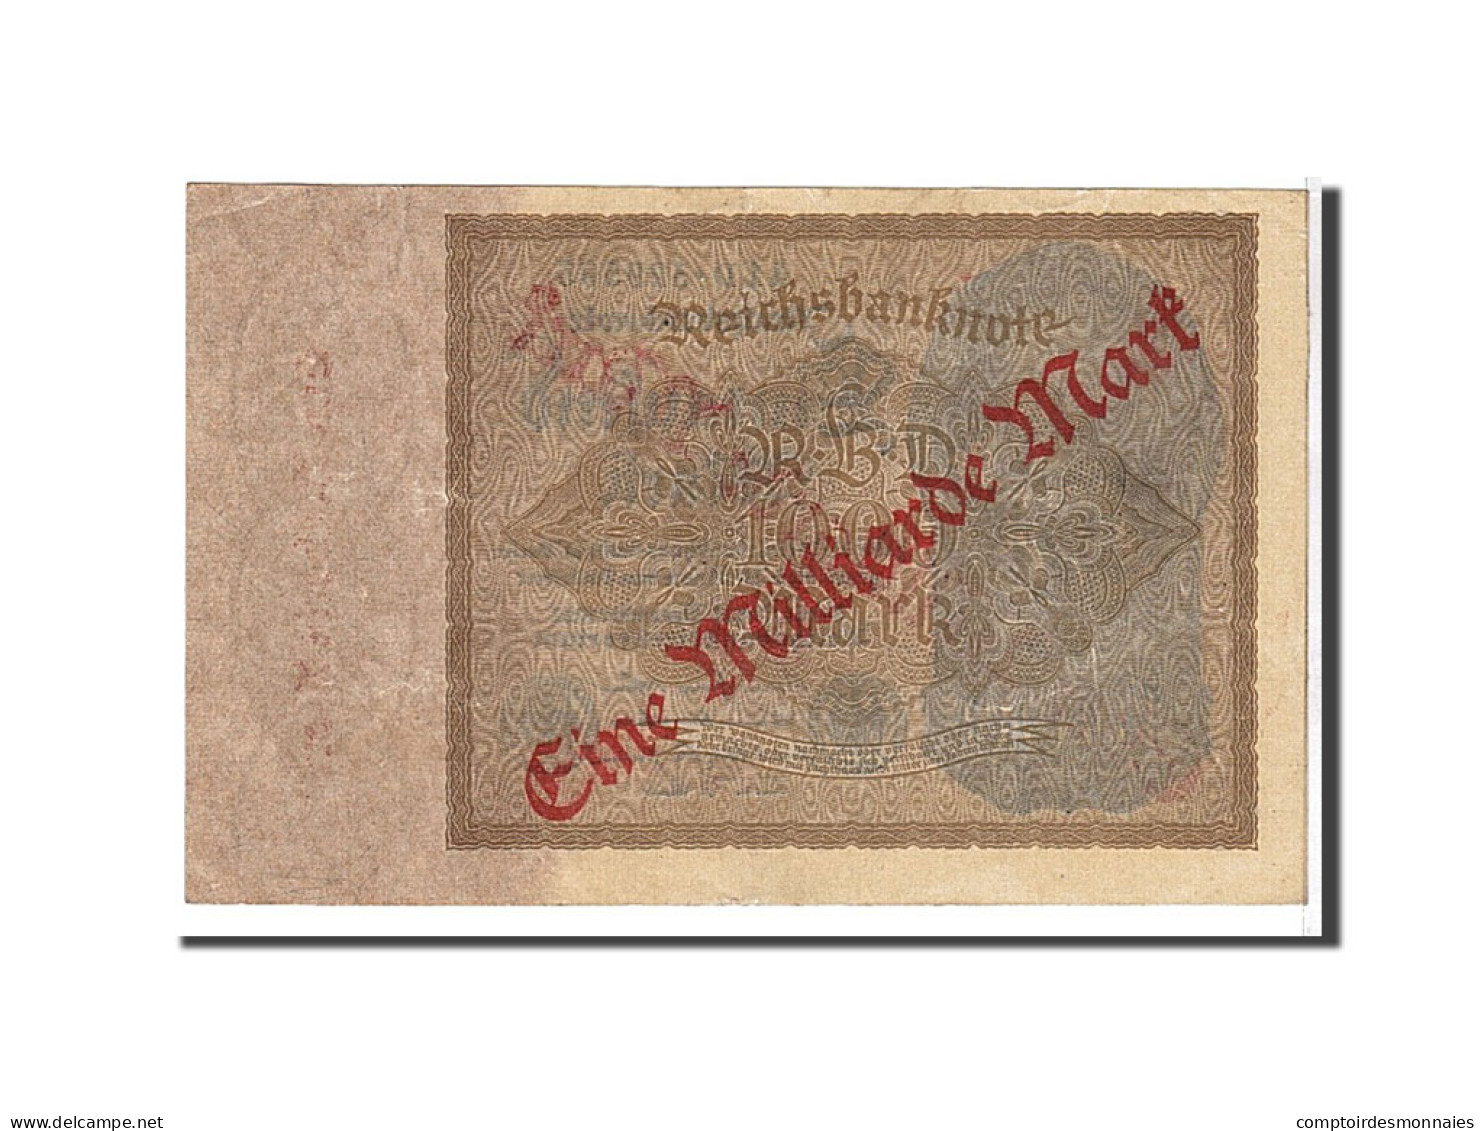 Billet, Allemagne, 1 Milliarde Mark On 1000 Mark, 1922, SUP - 1000 Mark